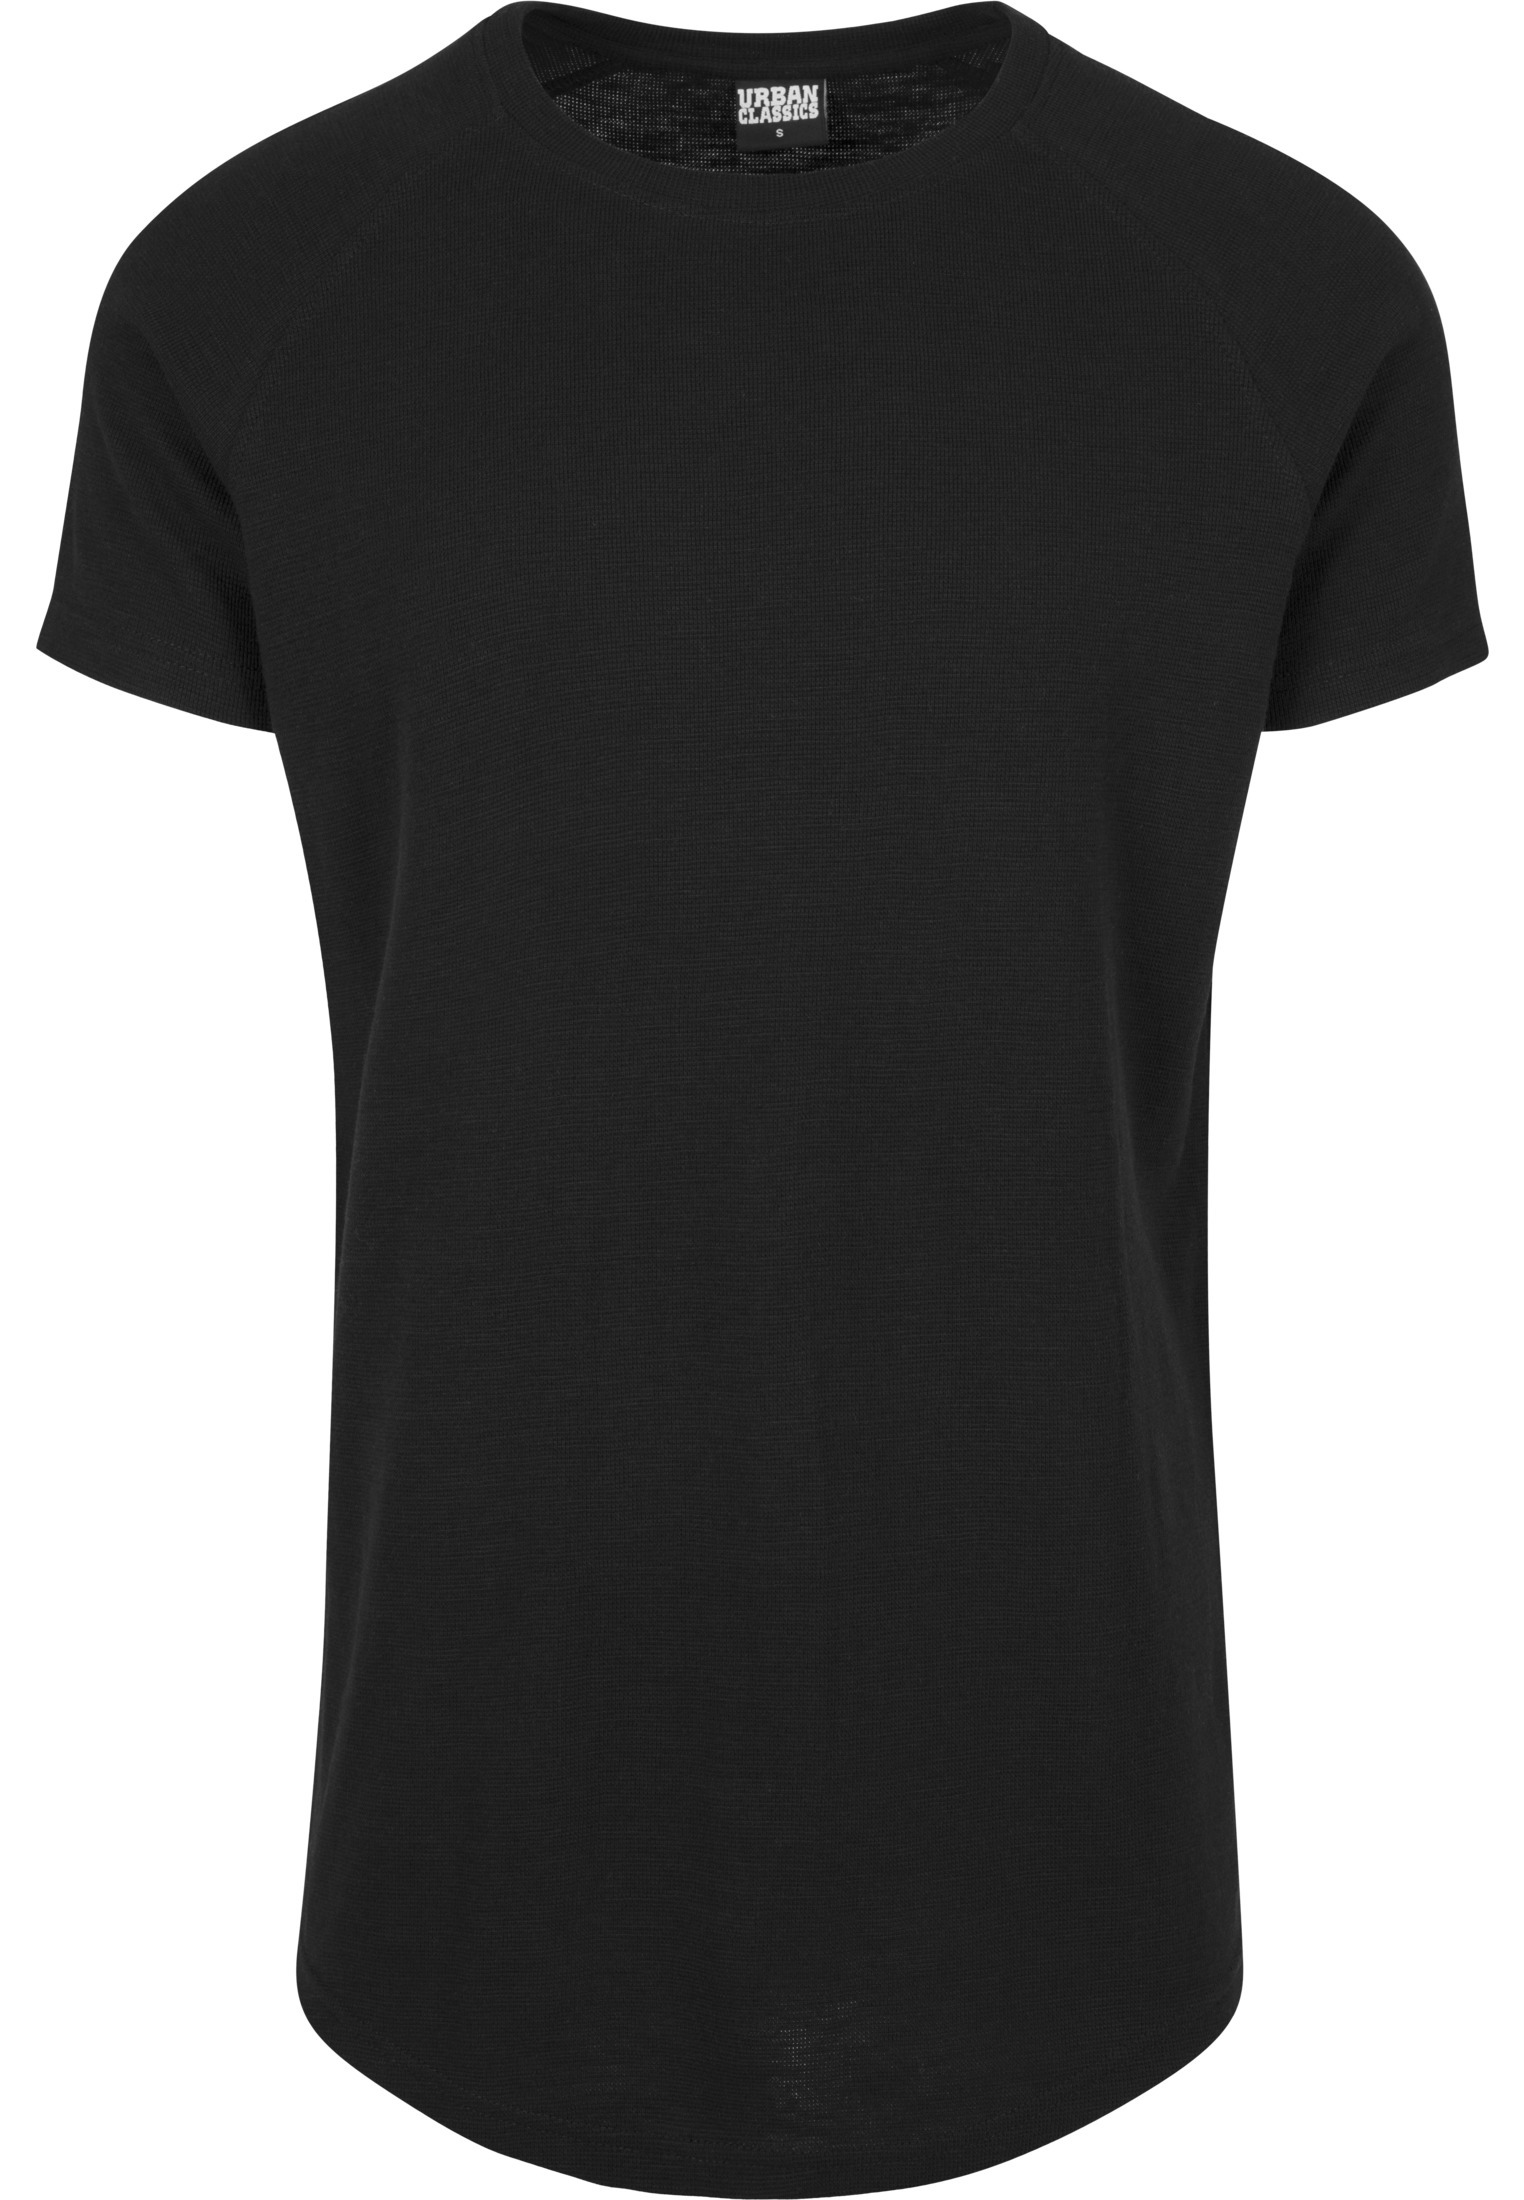 Odzież Koszulki Urban Classics Koszulka w kolorze Czarnym 